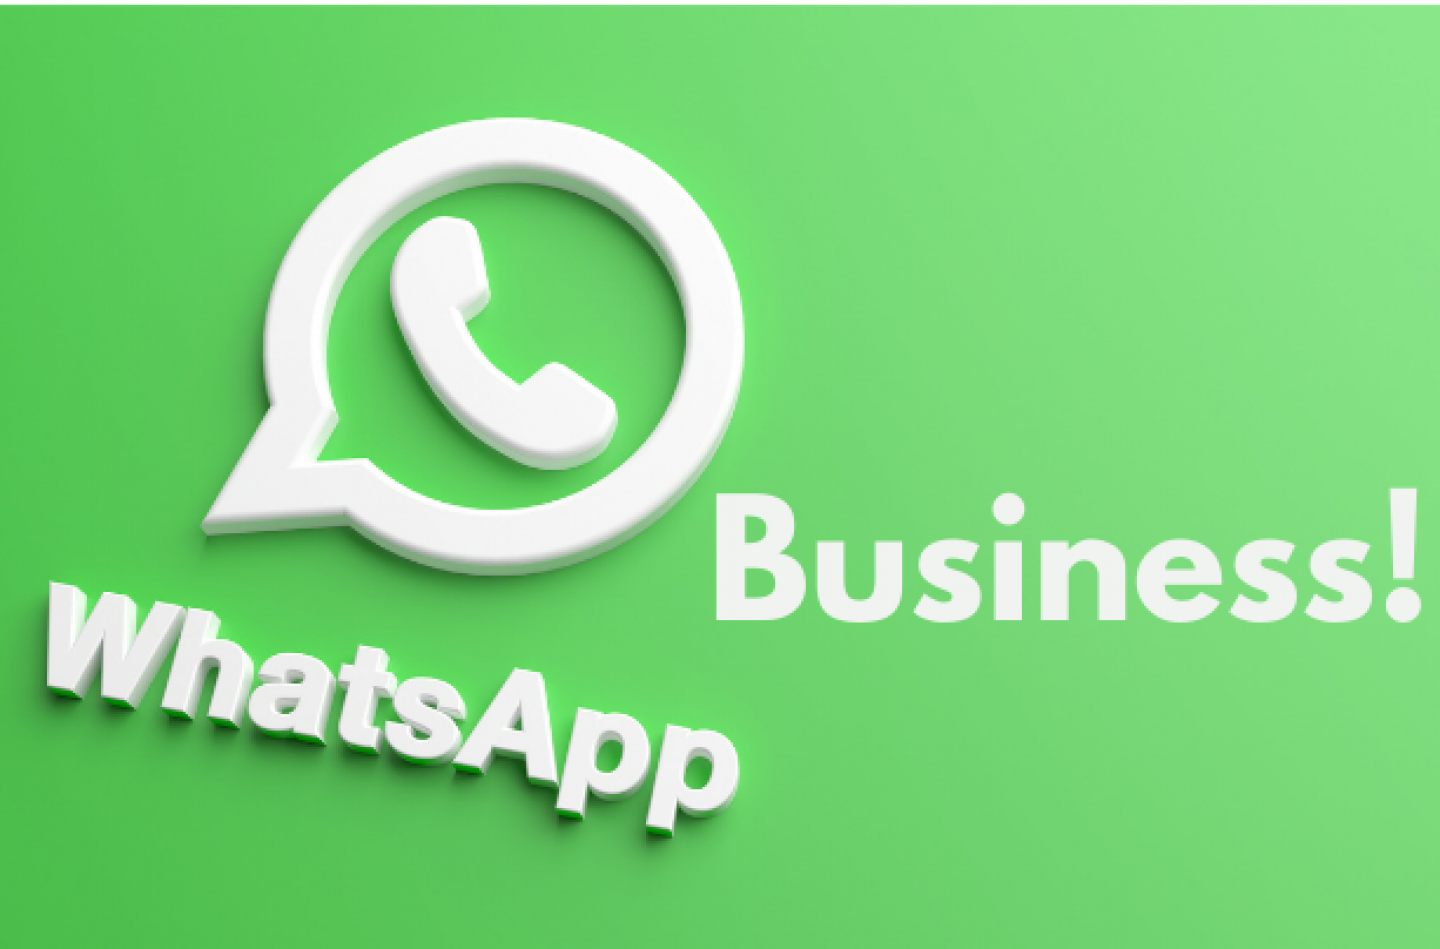 Whatsapp Business guida completa per piccole imprese guida completa per piccole imprese